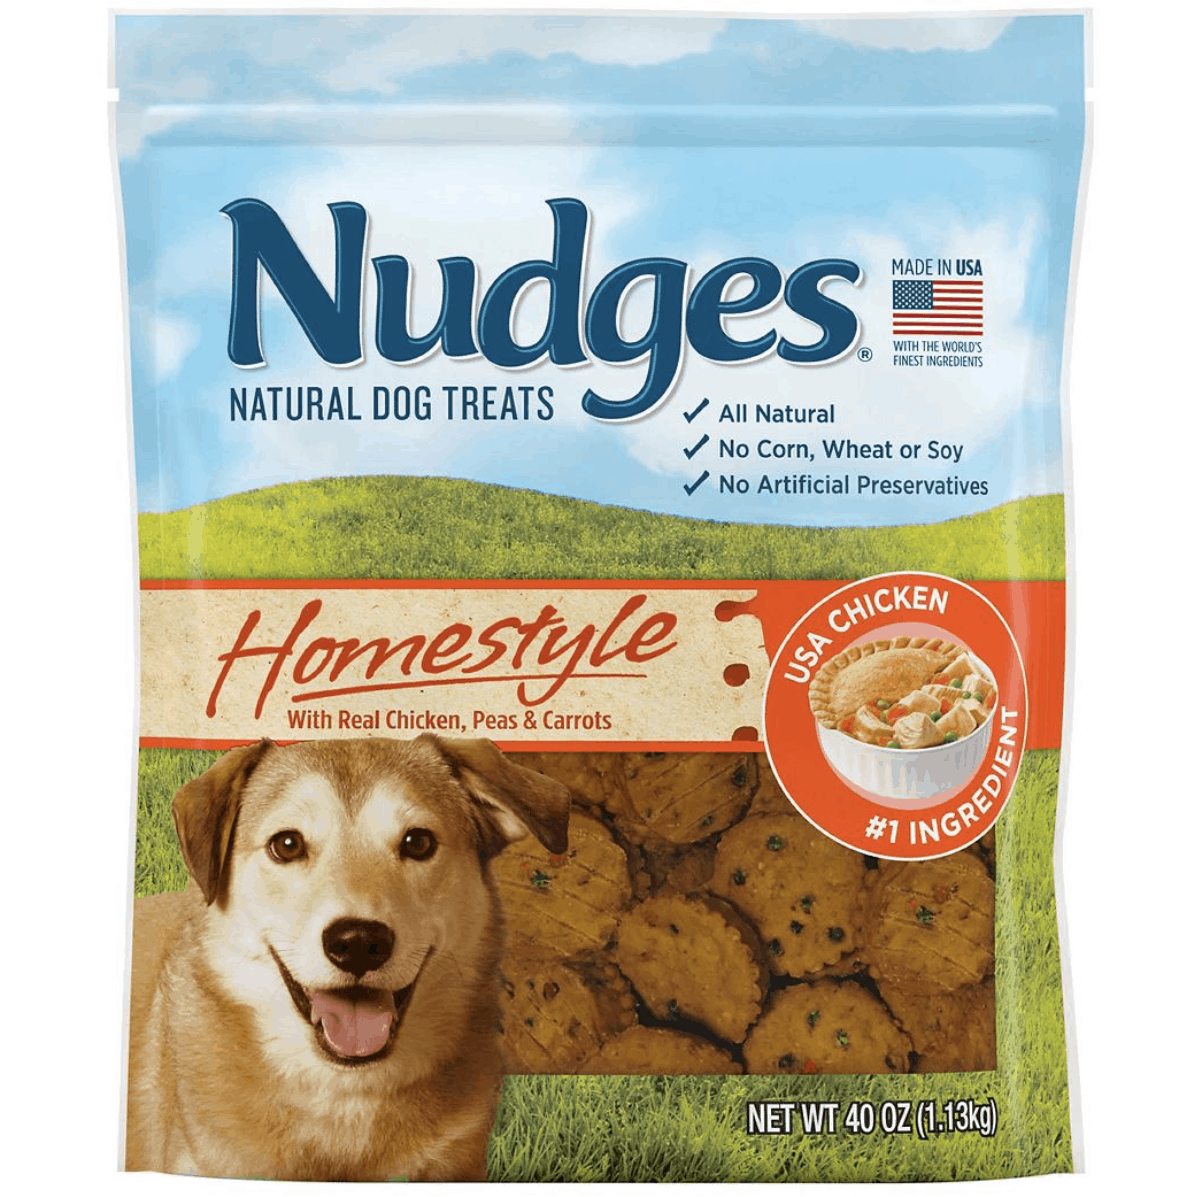 Nudges Homestyle Pot Pie Dog Treats, 40 oz.